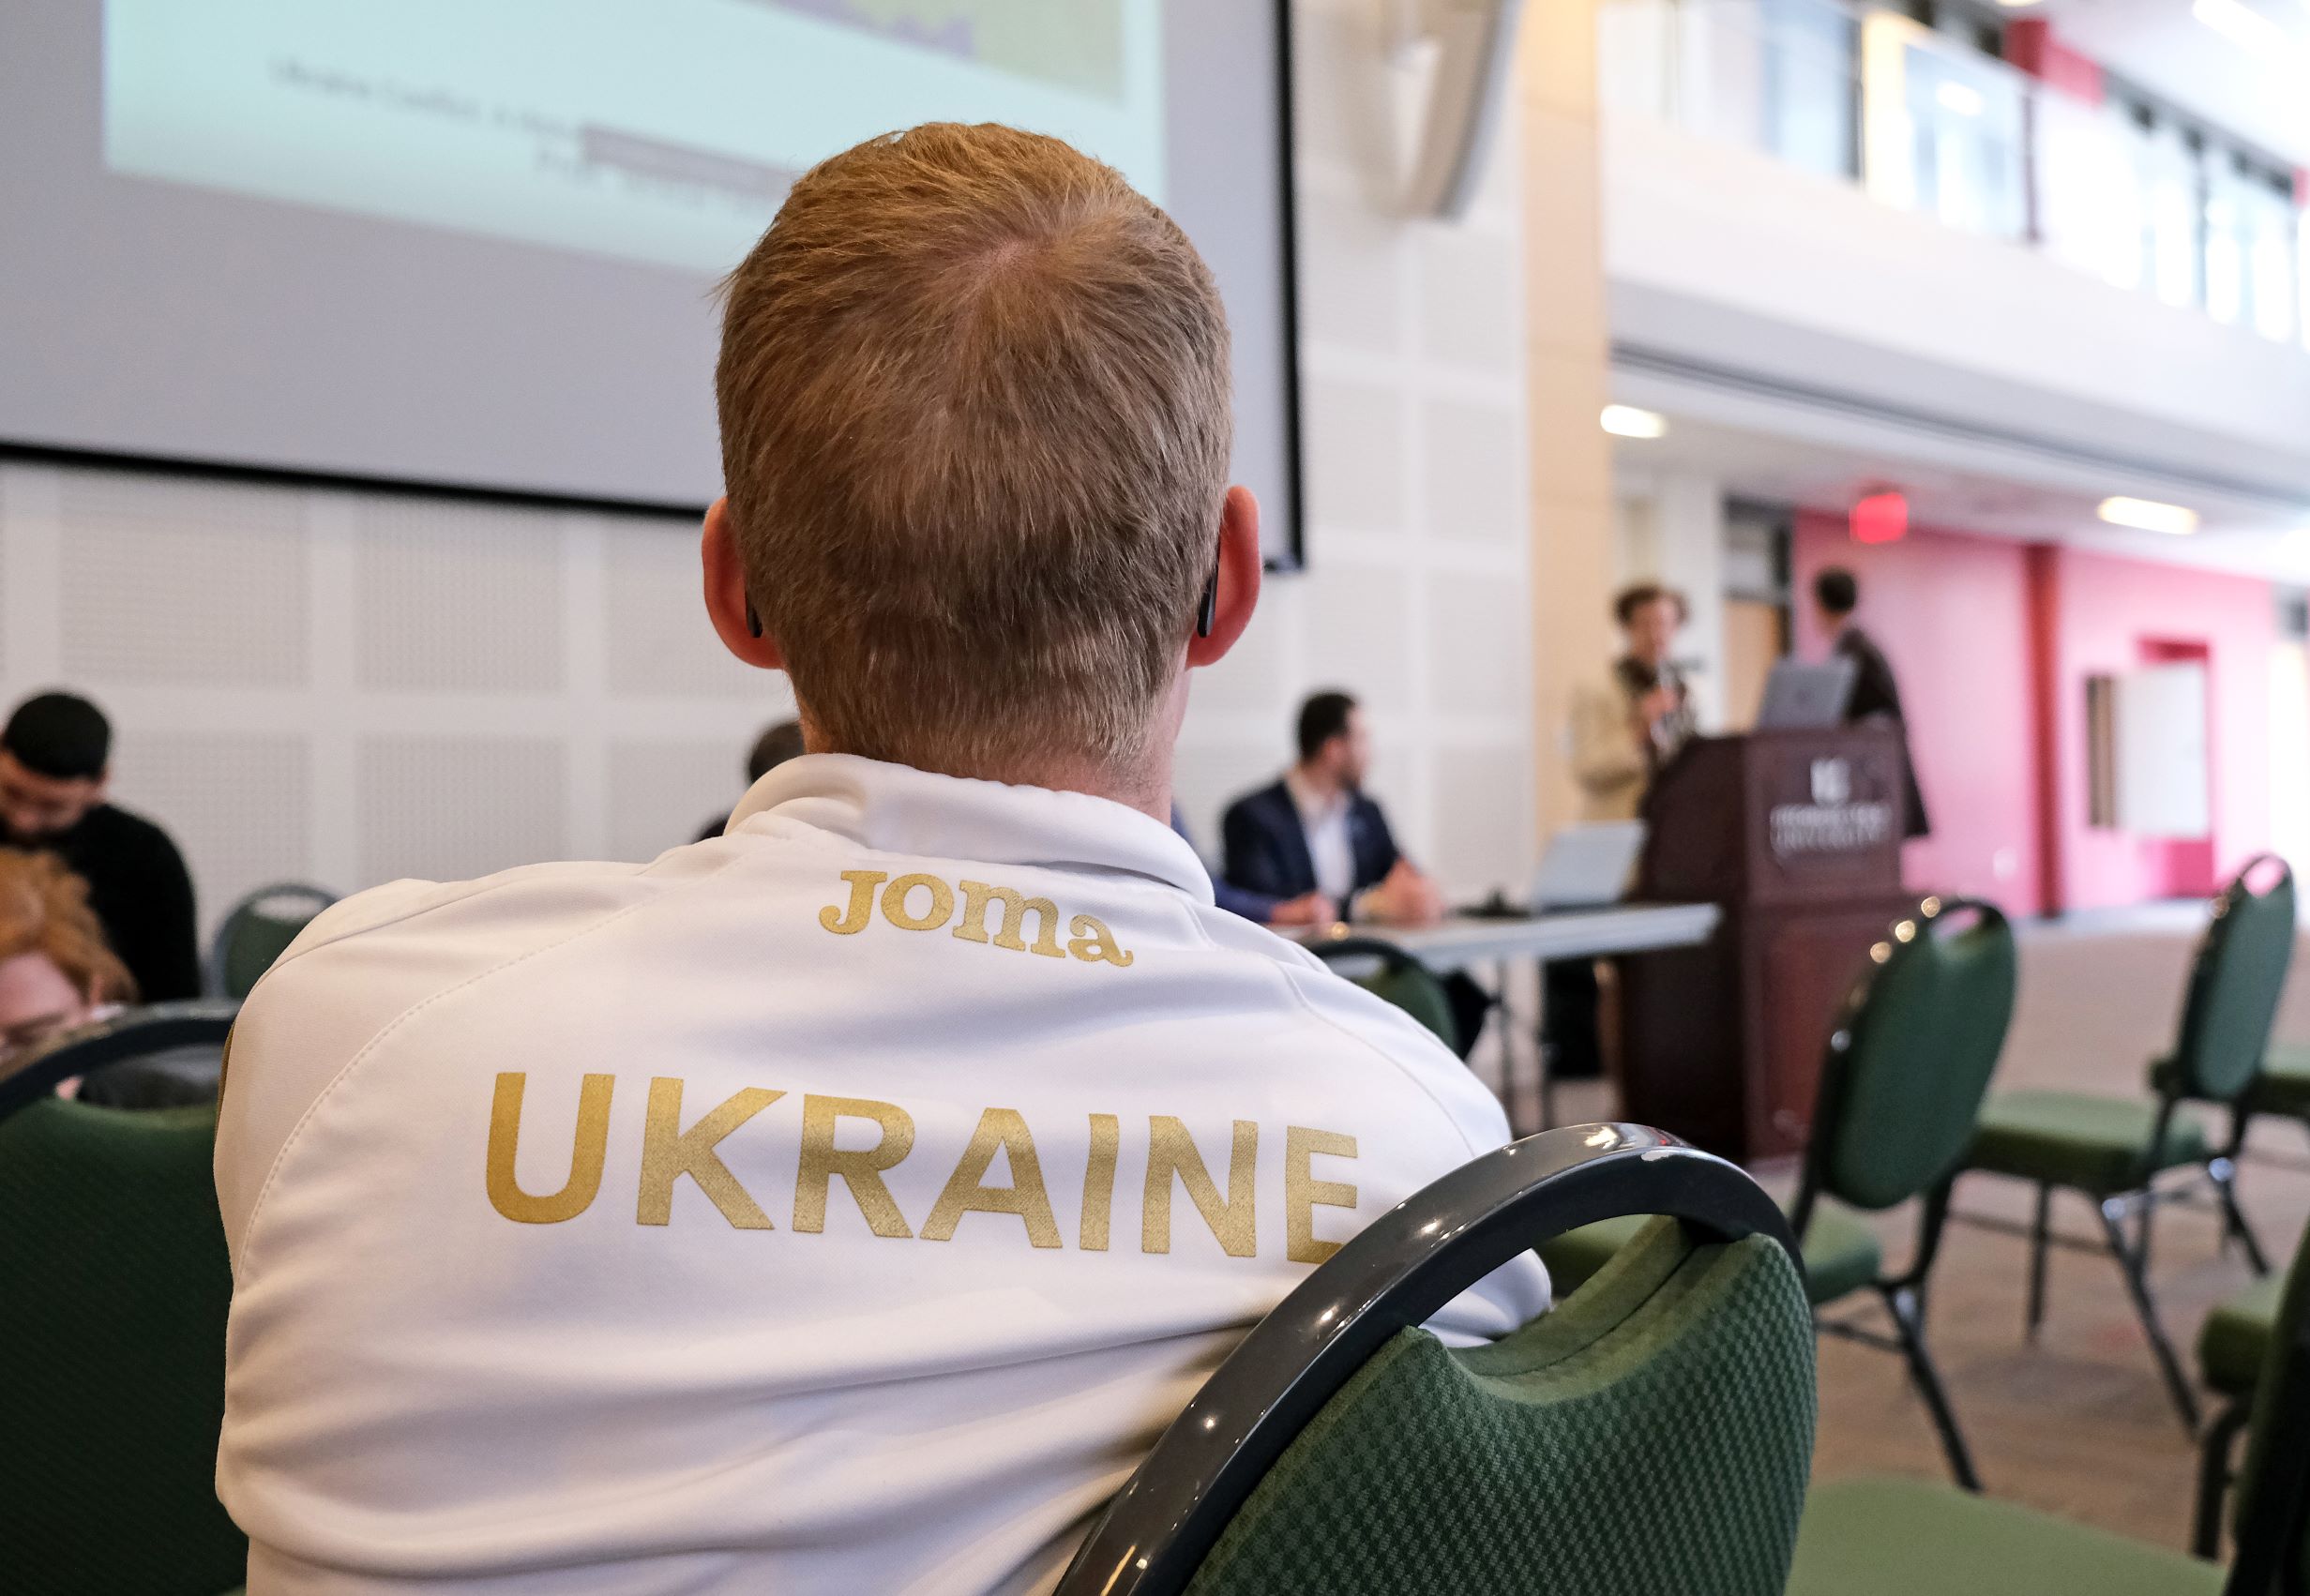 Understanding the Conflict in Ukraine - Hammond Hall